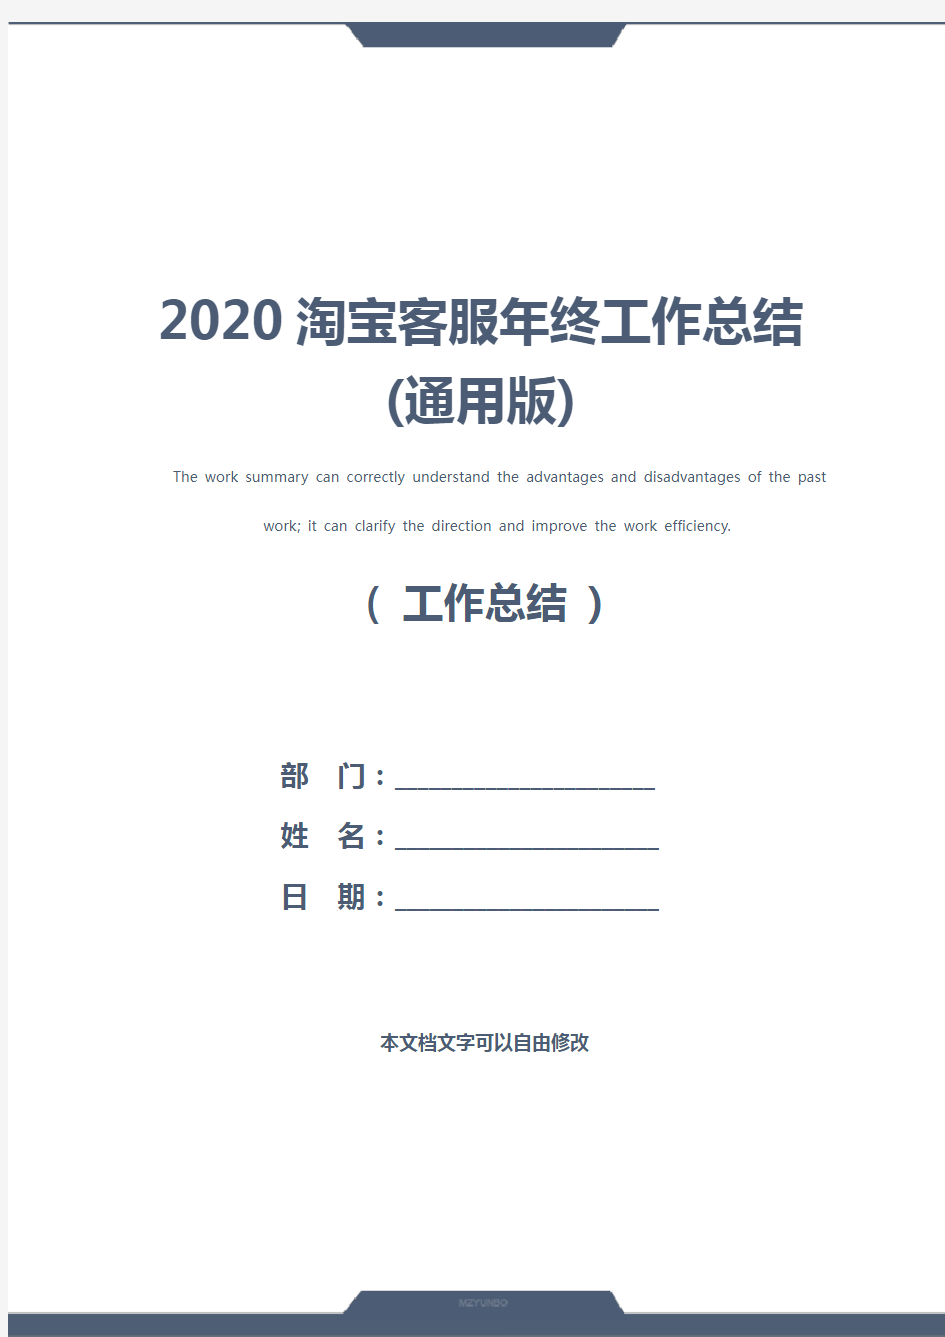 2020淘宝客服年终工作总结(通用版)